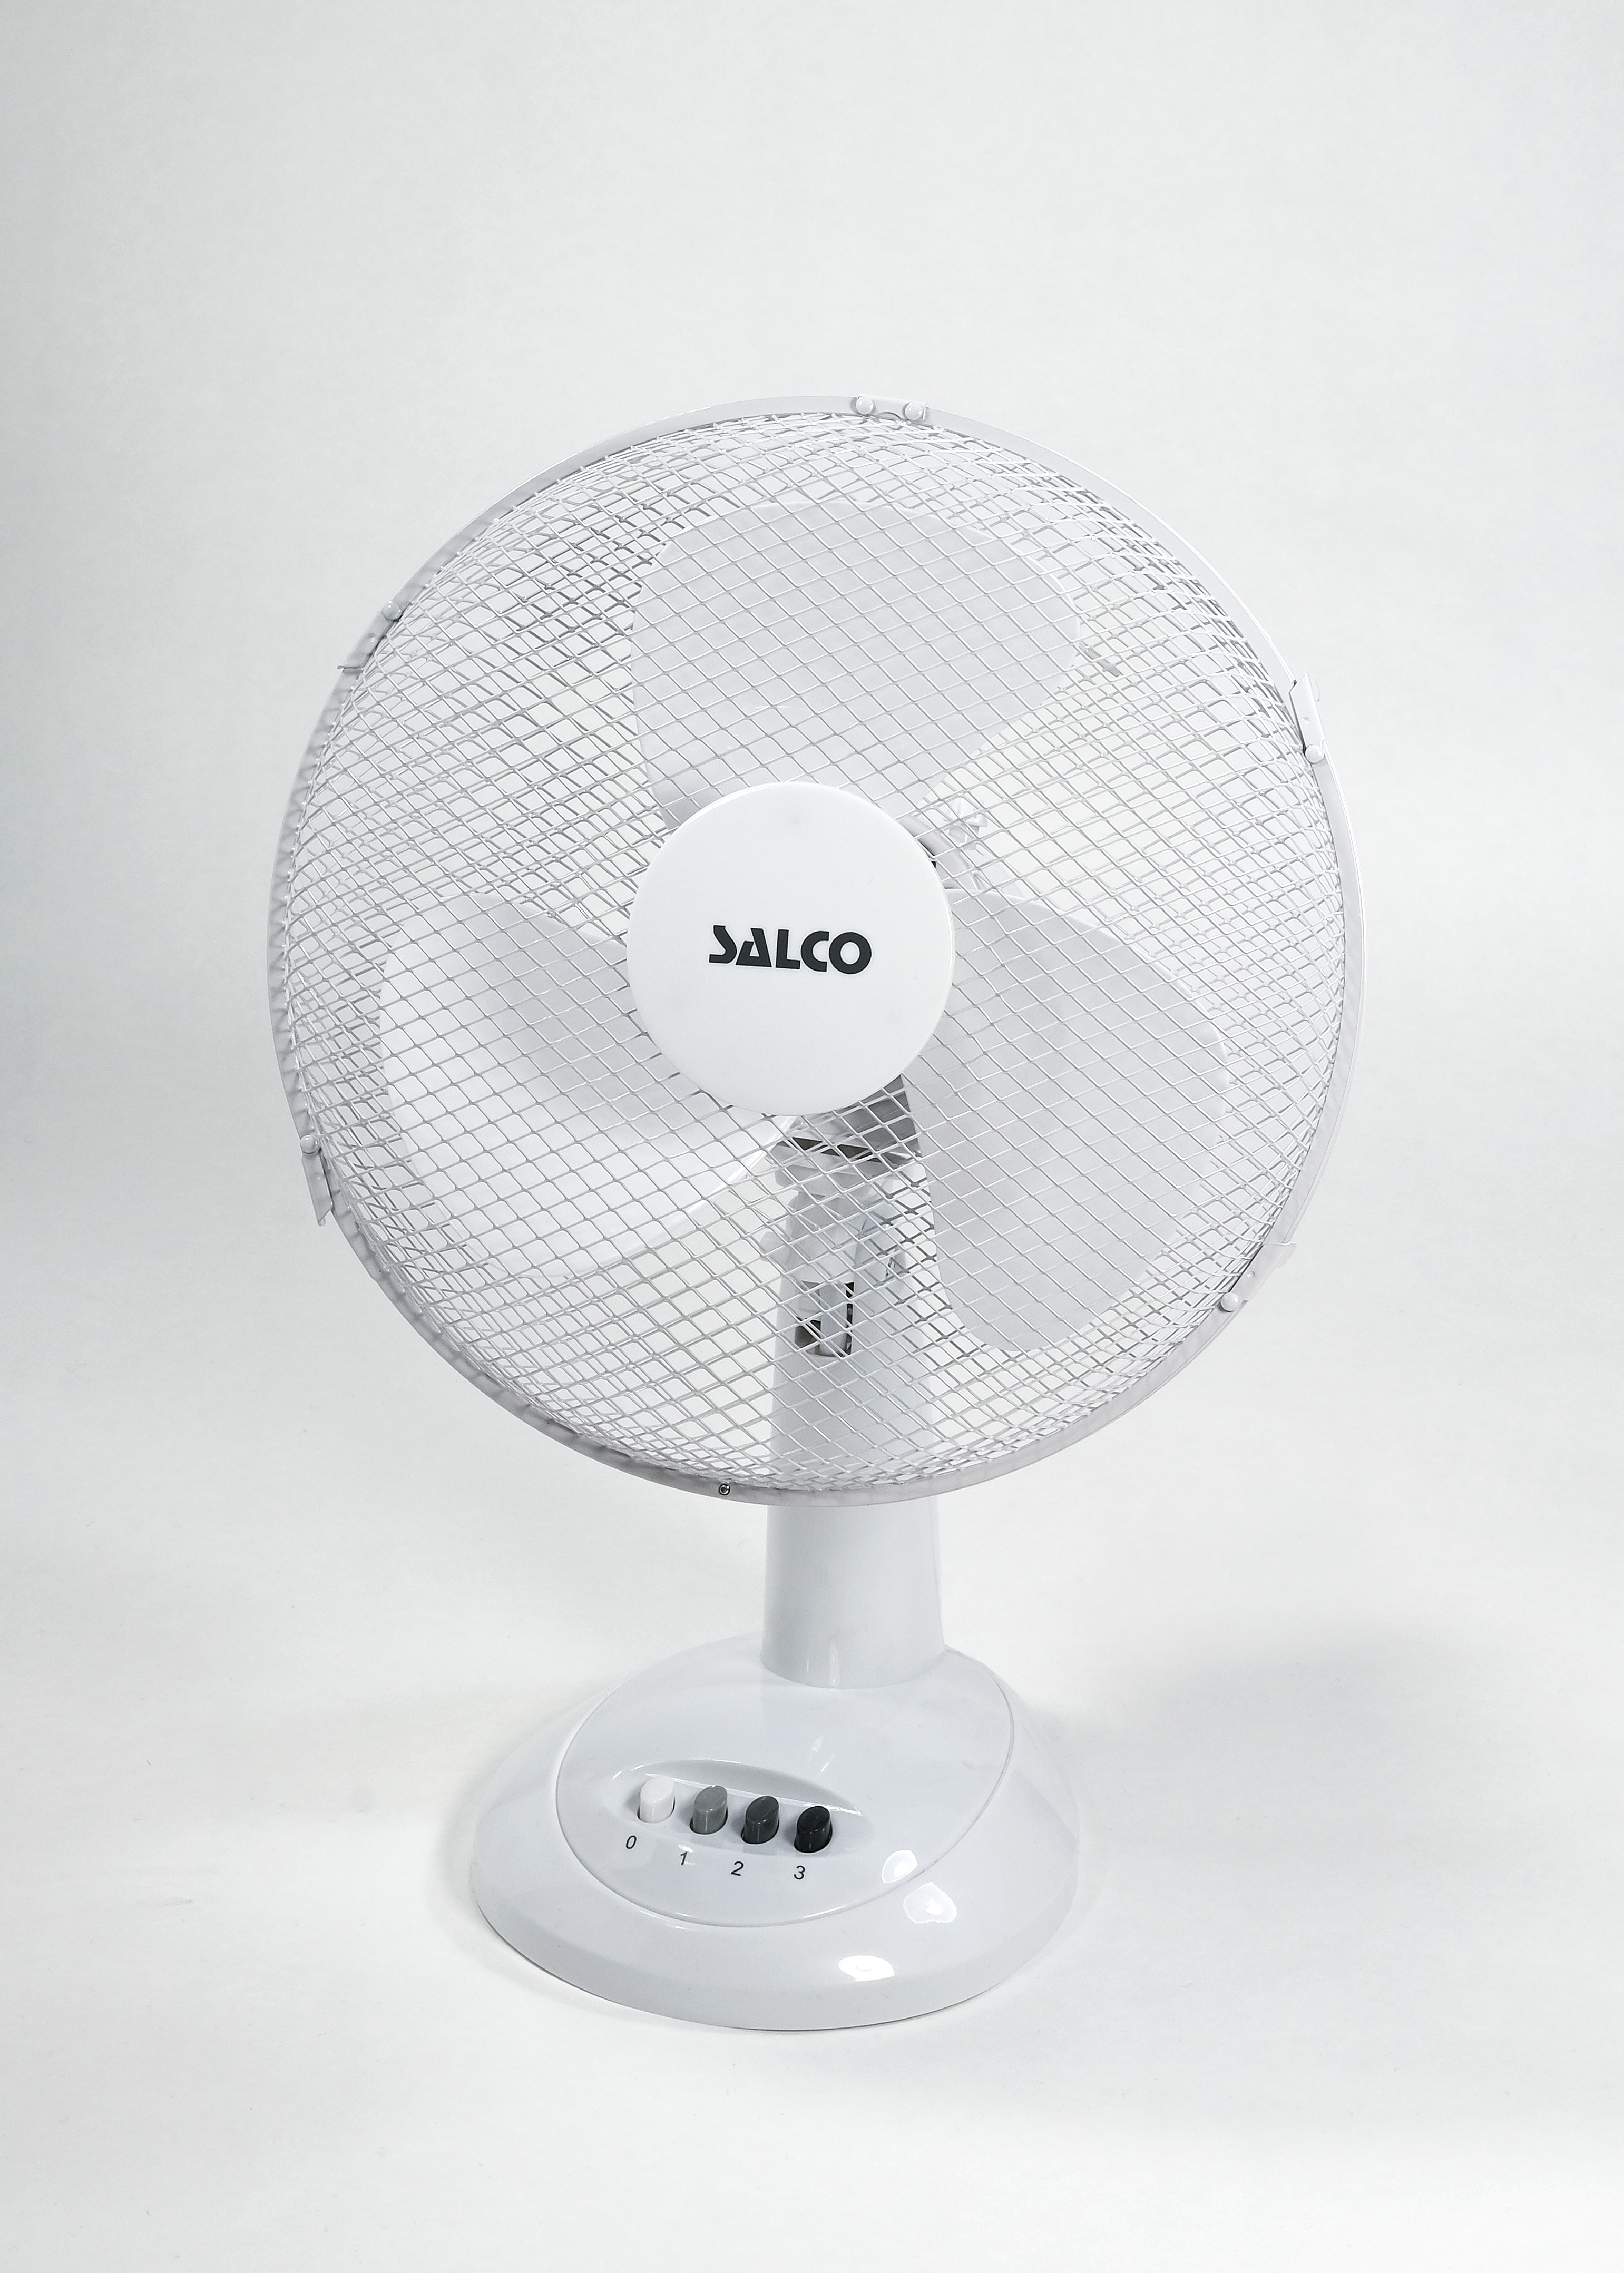 SALCO Tischventilator, platzsparend, weiß 30cm 3 Tischventilator Geschwindigkeiten, , oszillierend Durchmesser